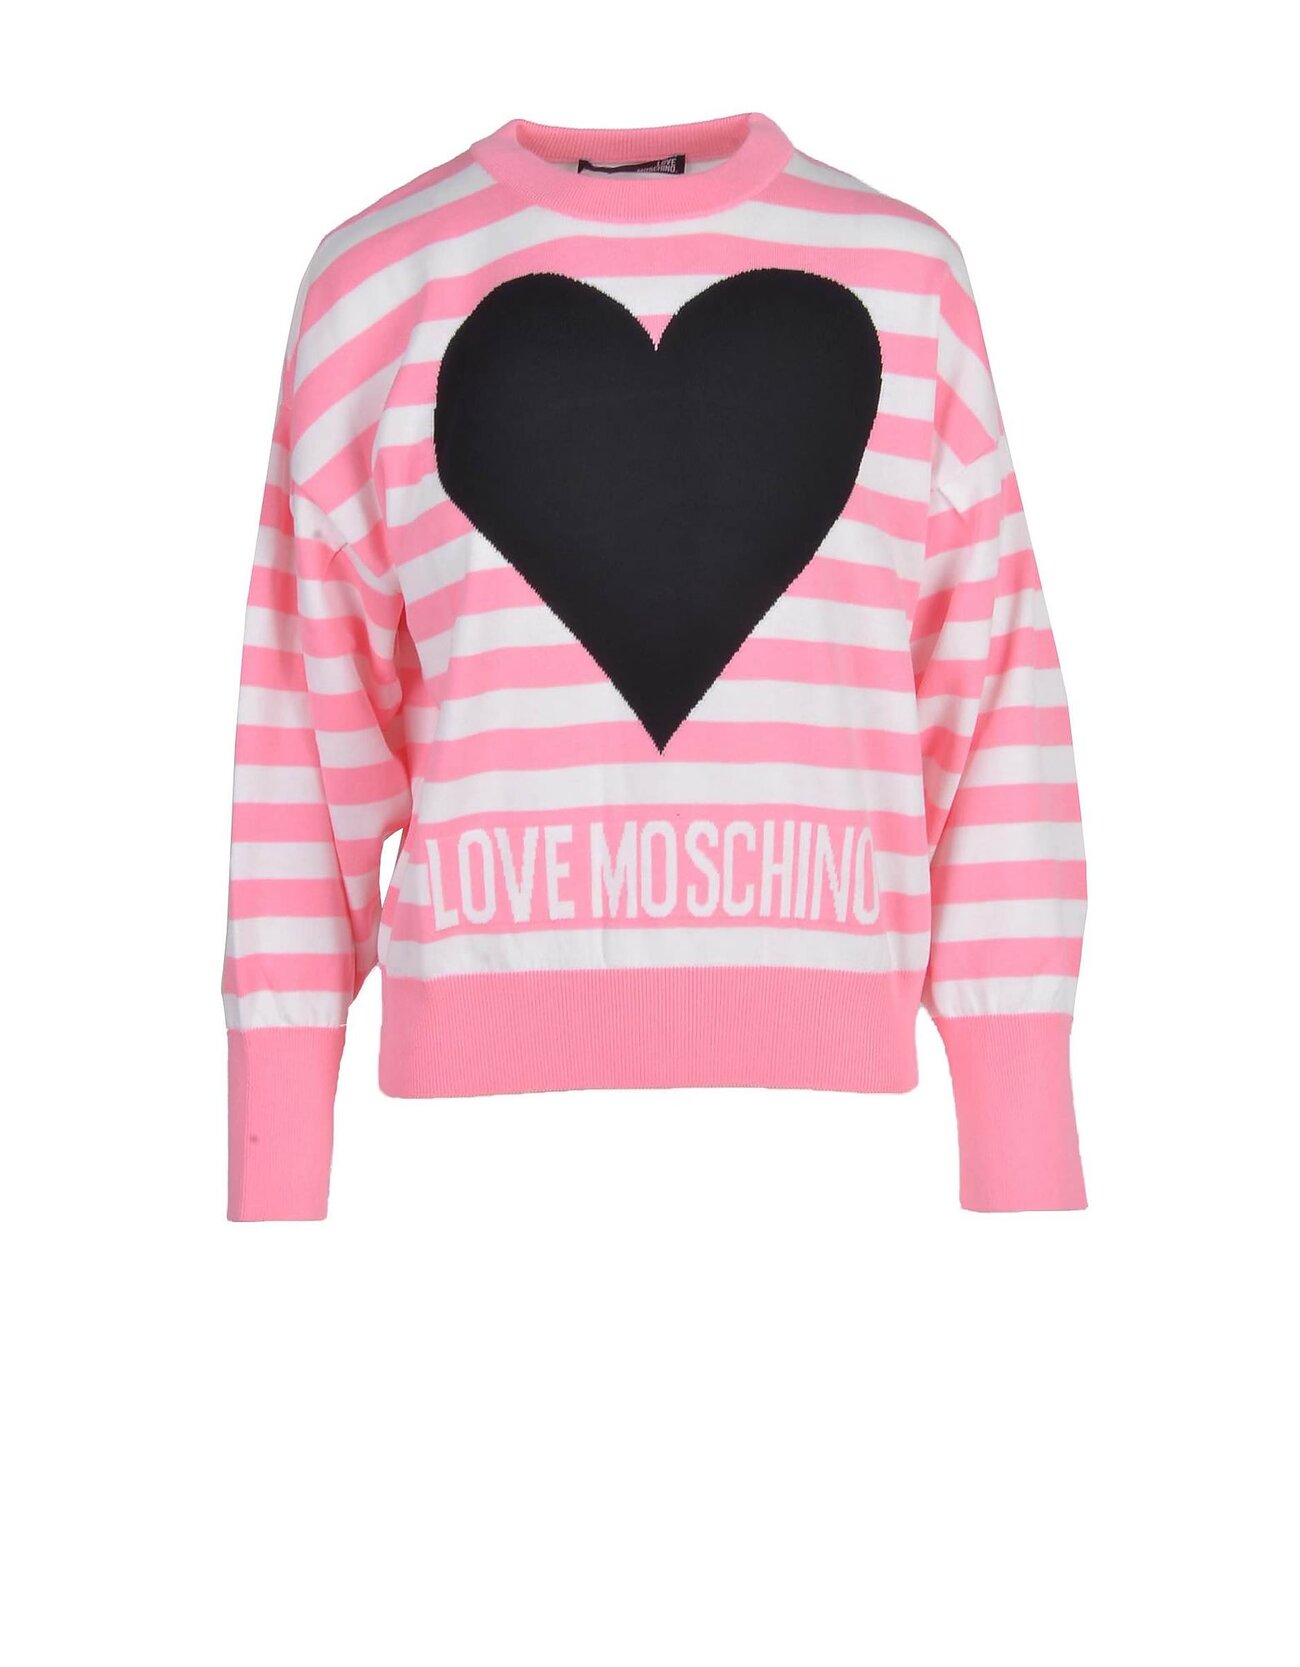 Love Moschino Womens White / Pink Sweater